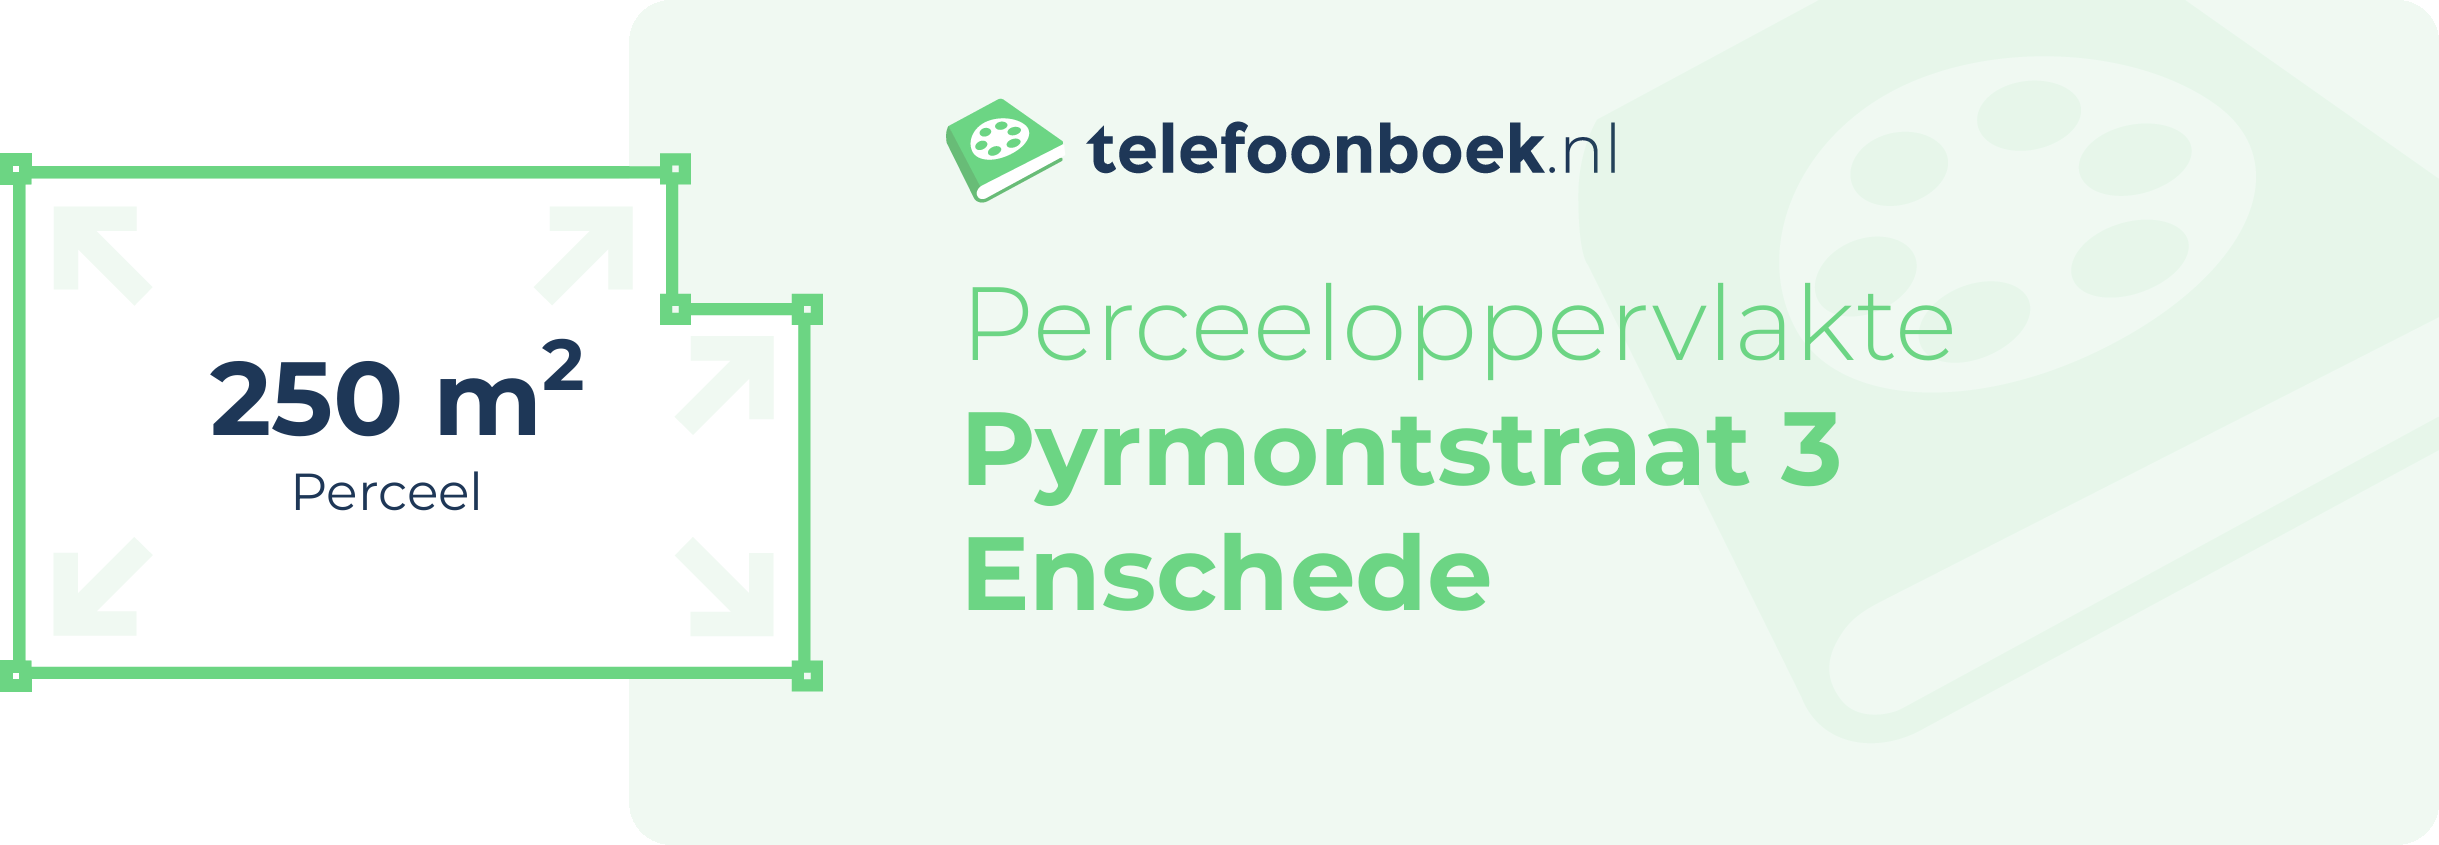 Perceeloppervlakte Pyrmontstraat 3 Enschede